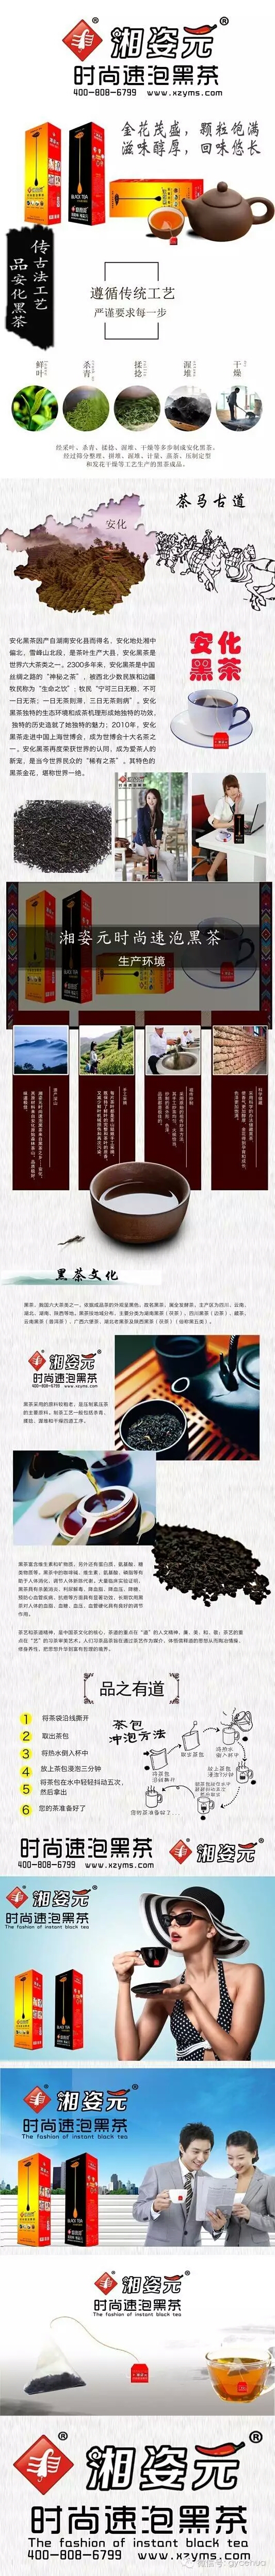 湘姿元安化黑茶网络推广创意(图9)